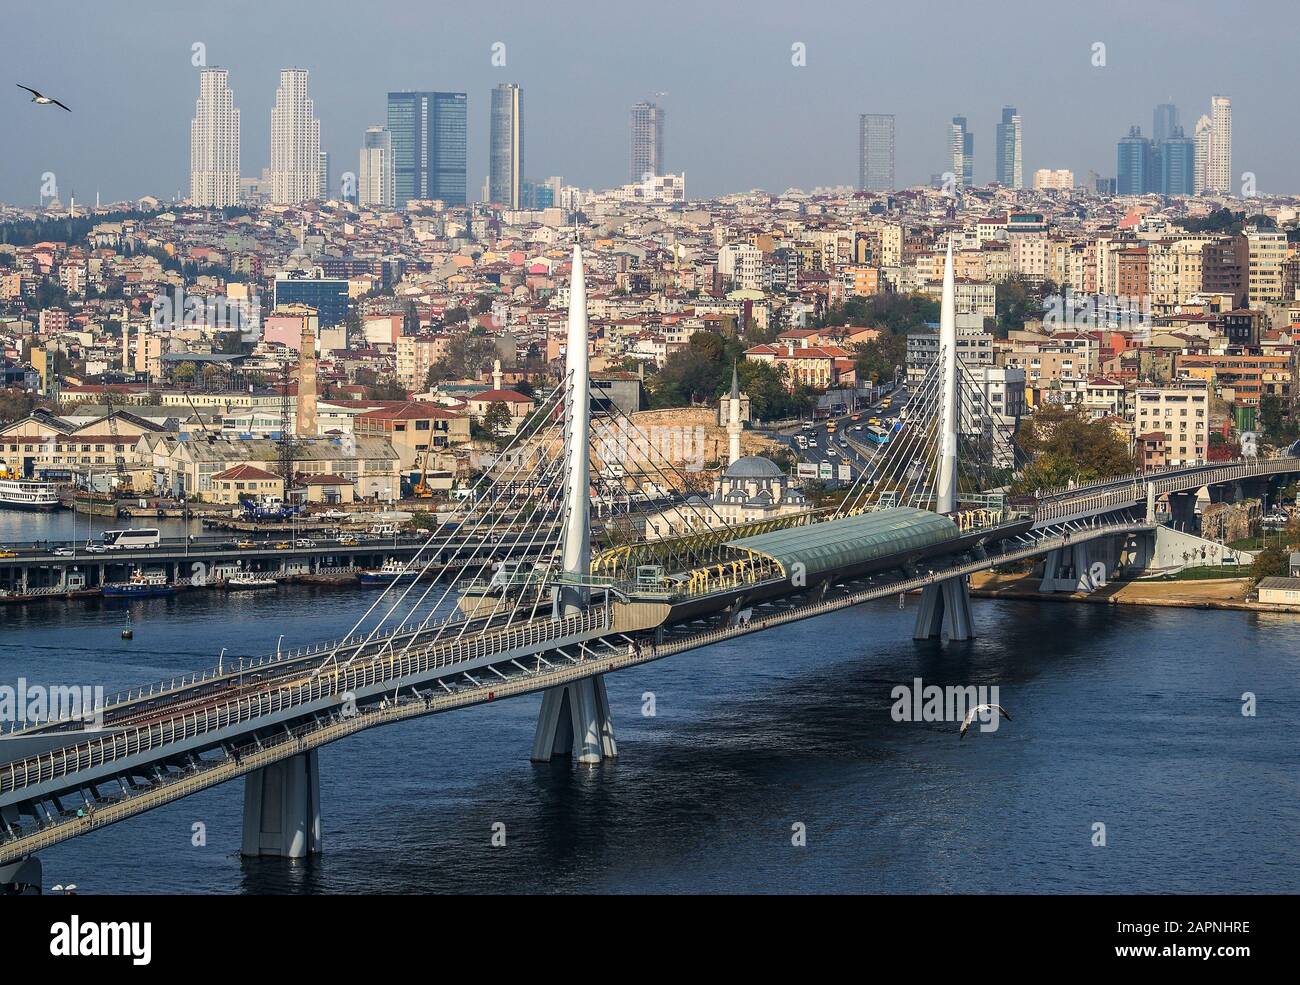 Atatürk-Brücke, U-Bahn-Brücke mit Panoramablick - Istanbul, Türkei Stockfoto